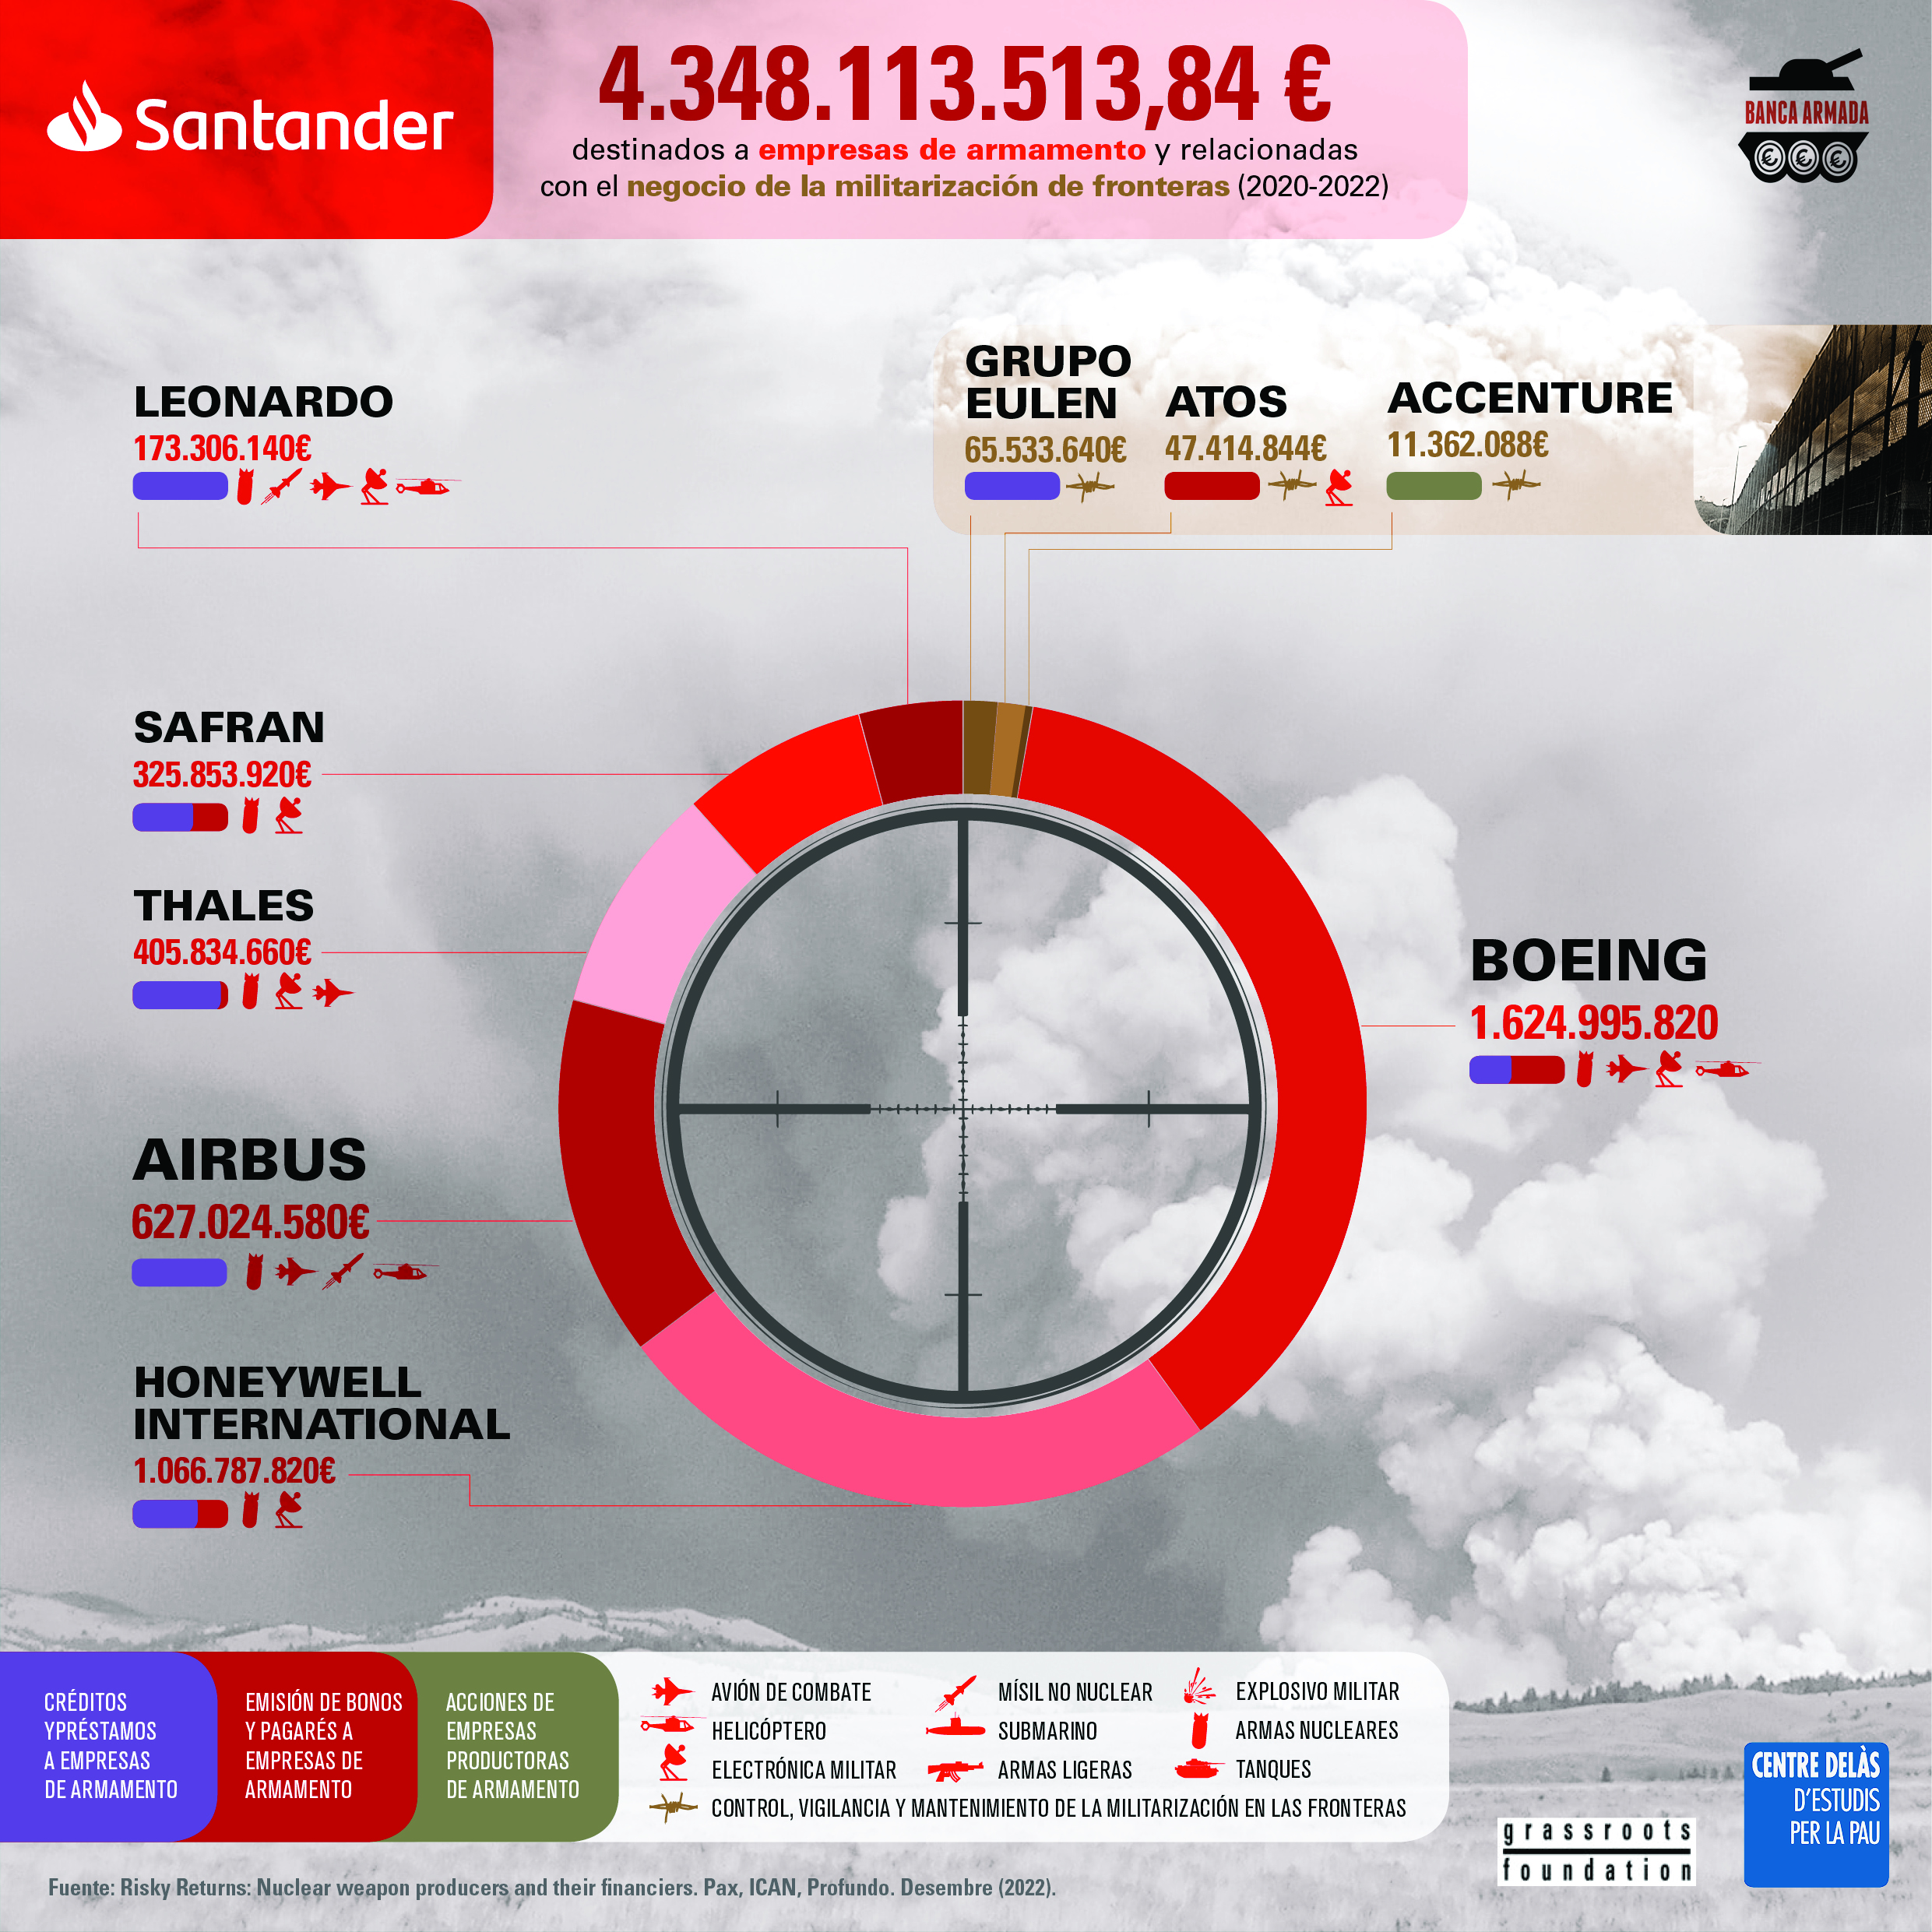 Infografía “Banco Santander: financiación a empresas de armamento y relacionadas con el negocio de la militarización de fronteras (2020-2022)”